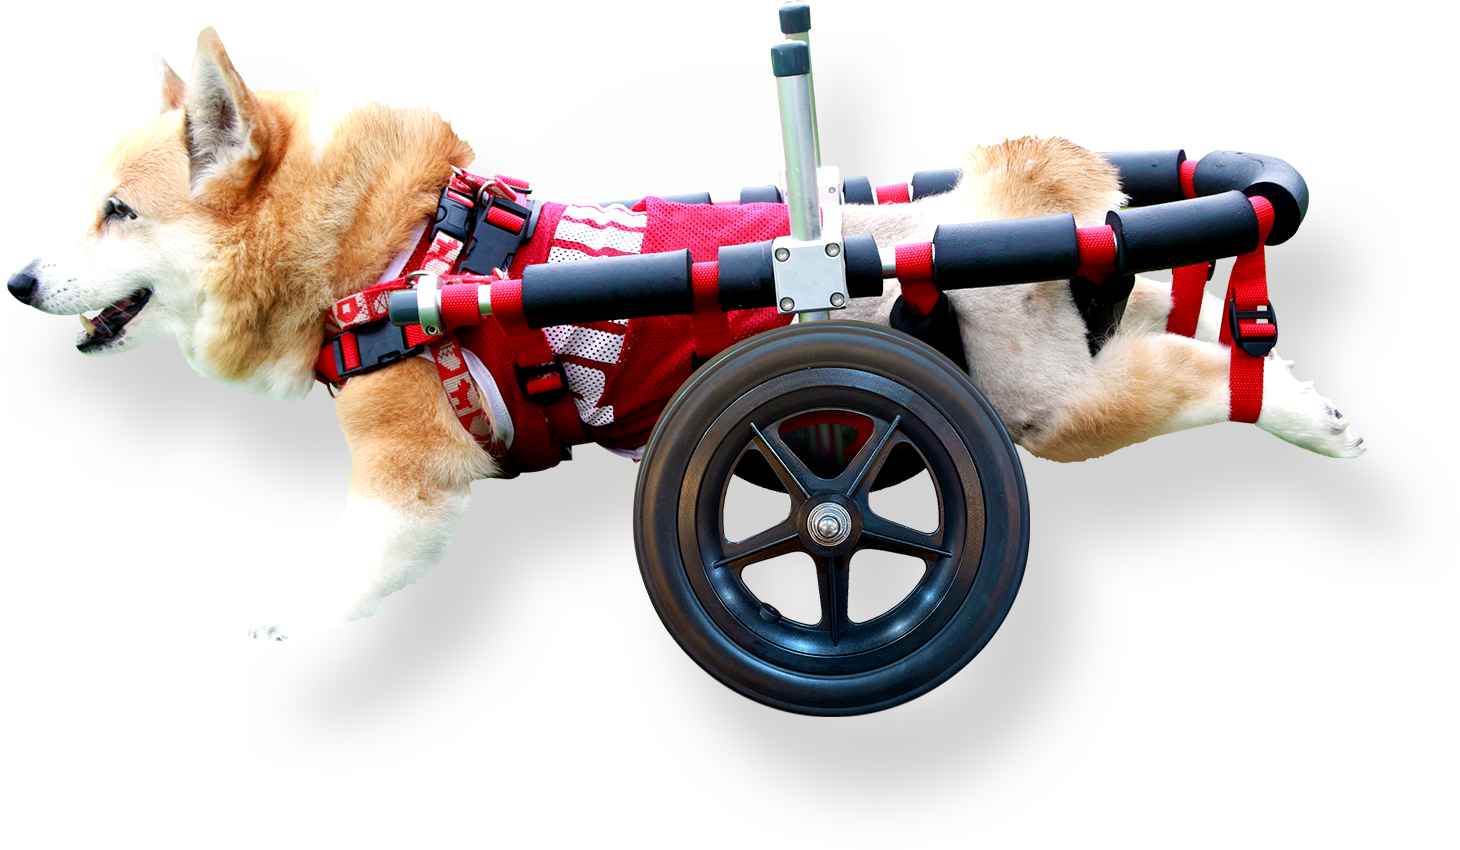 11256円 新品同様 犬車椅子 犬用車椅子 犬の車椅子 コーギー 車椅子 犬用品 犬 介護用品 補助輪 安い 人気